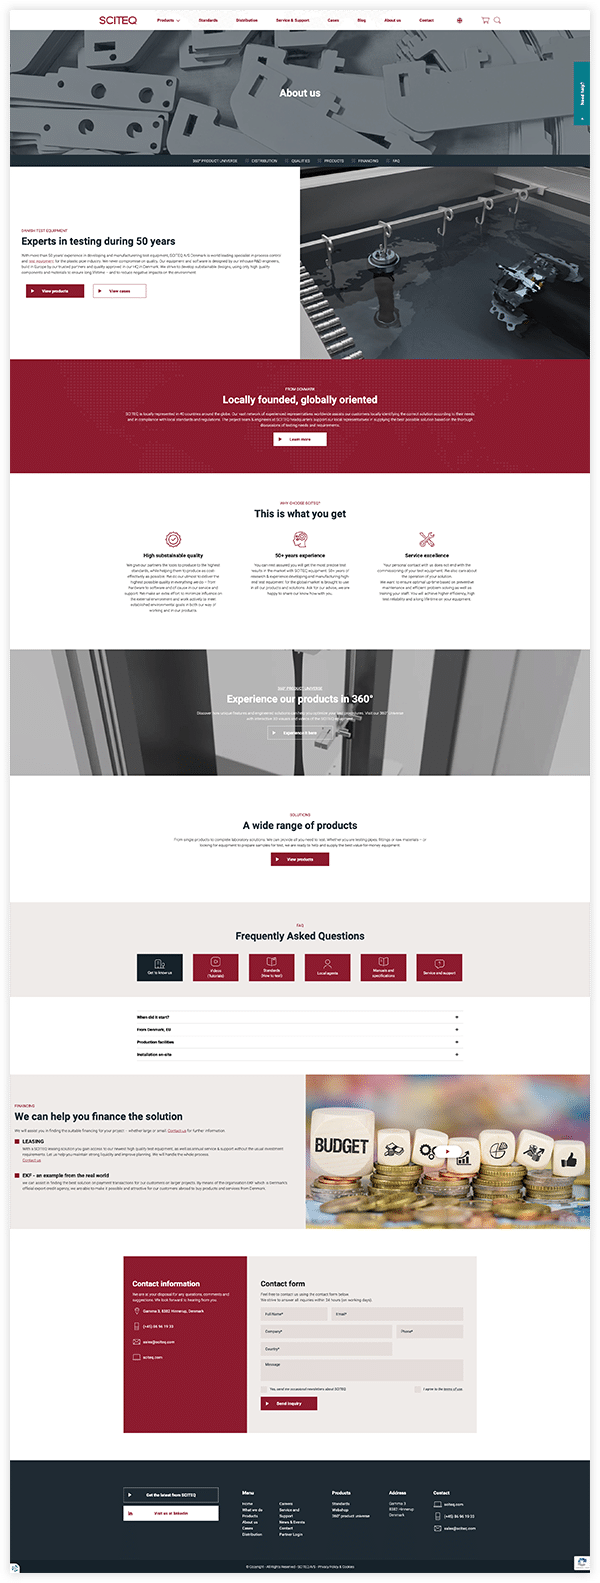 Sciteq website design